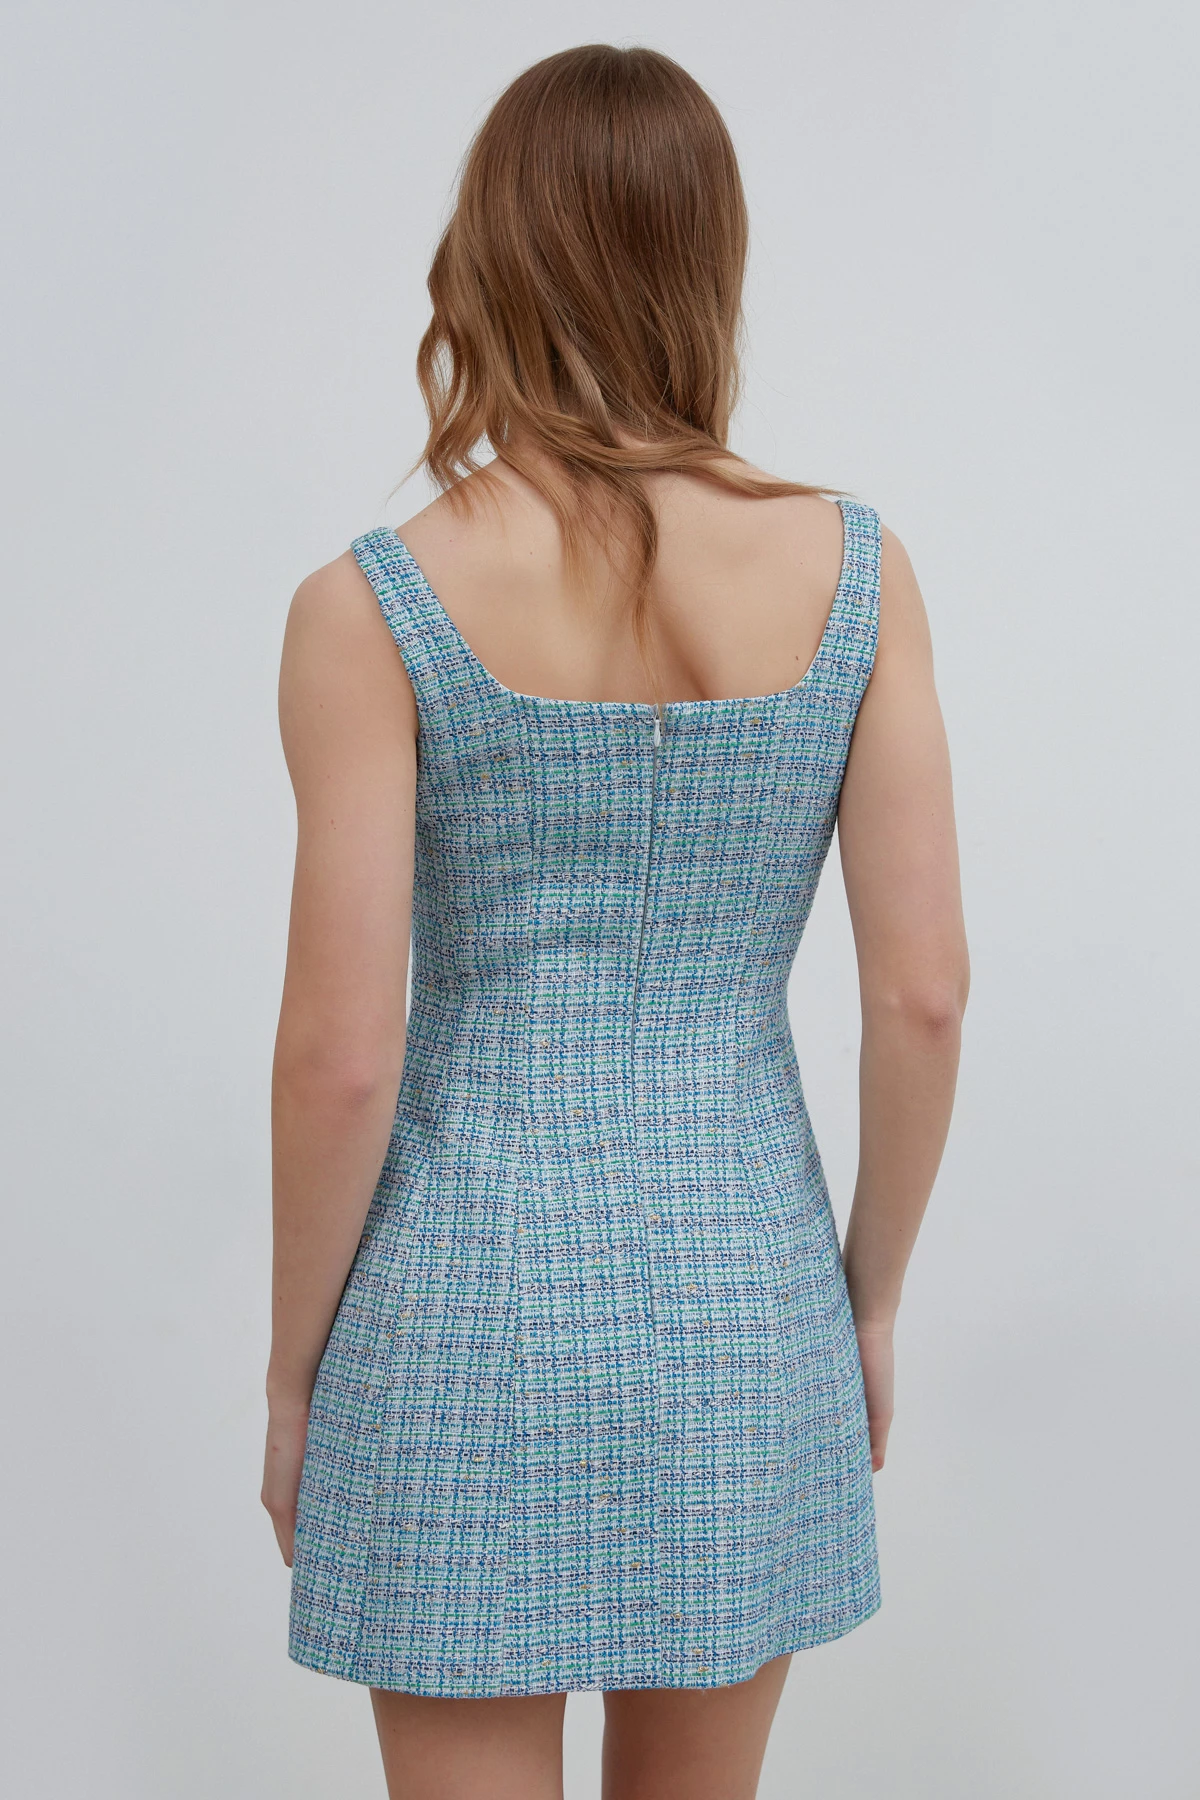 Short blue X-shaped tweed sundress, photo 8